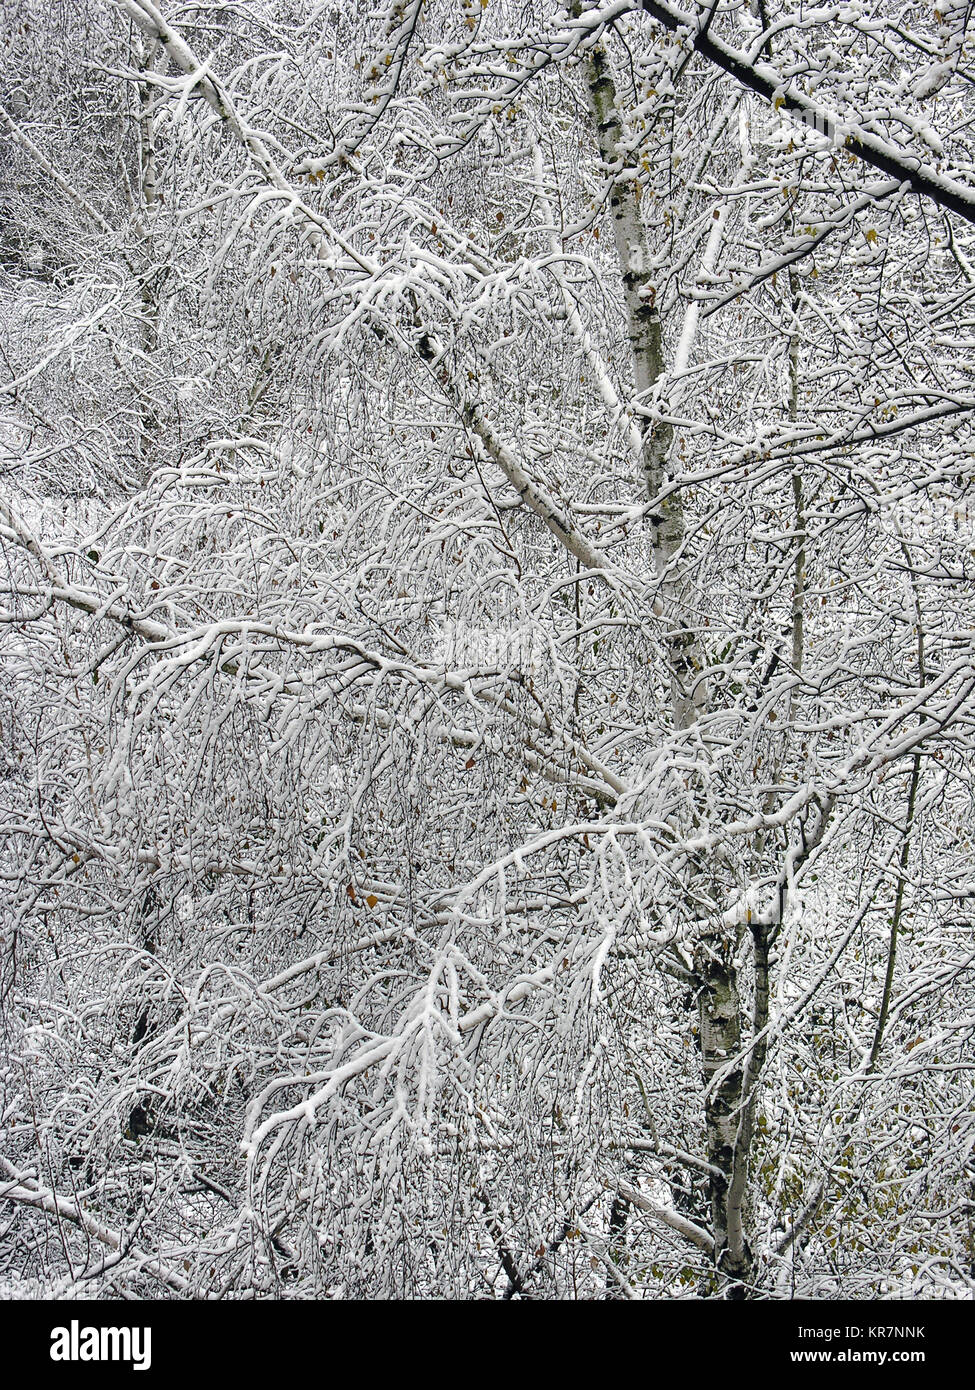 Couronné de neige bouleaux, composition verticale Banque D'Images